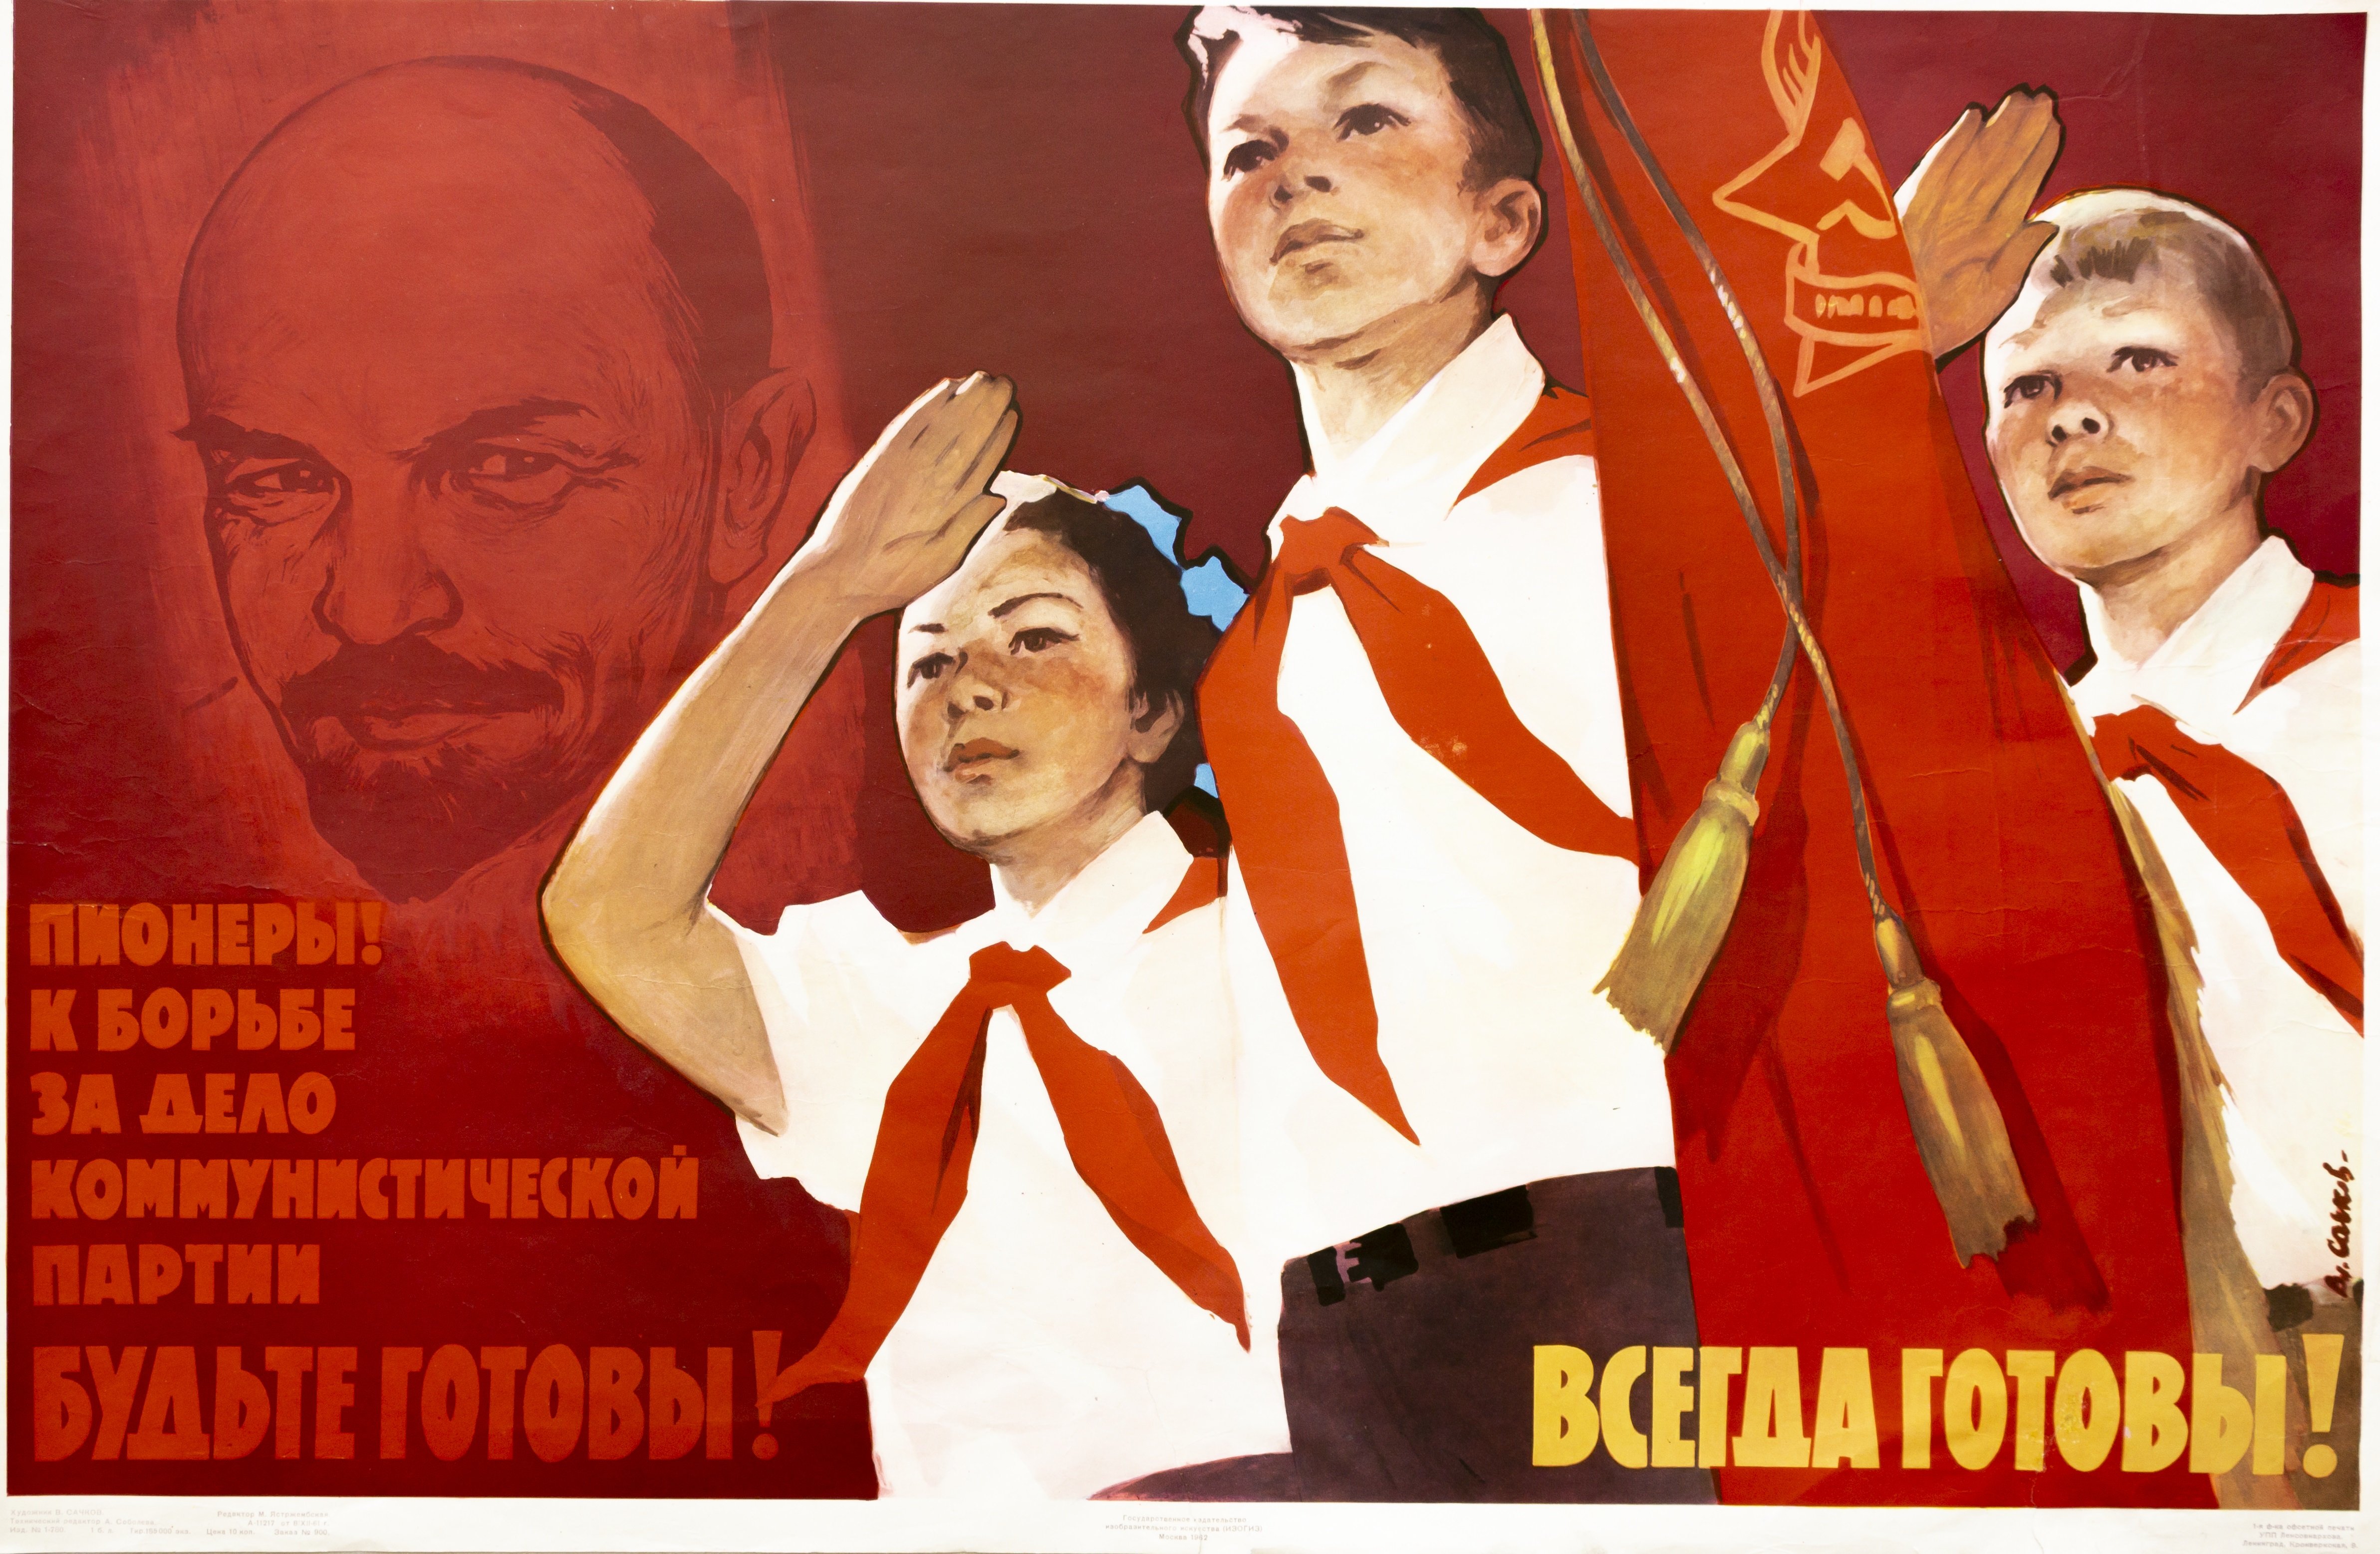 Лежит будь готов. Пионерские плакаты. Пионеры плакаты. Пионерские плакаты и лозунги. Советские пионерские плакаты.